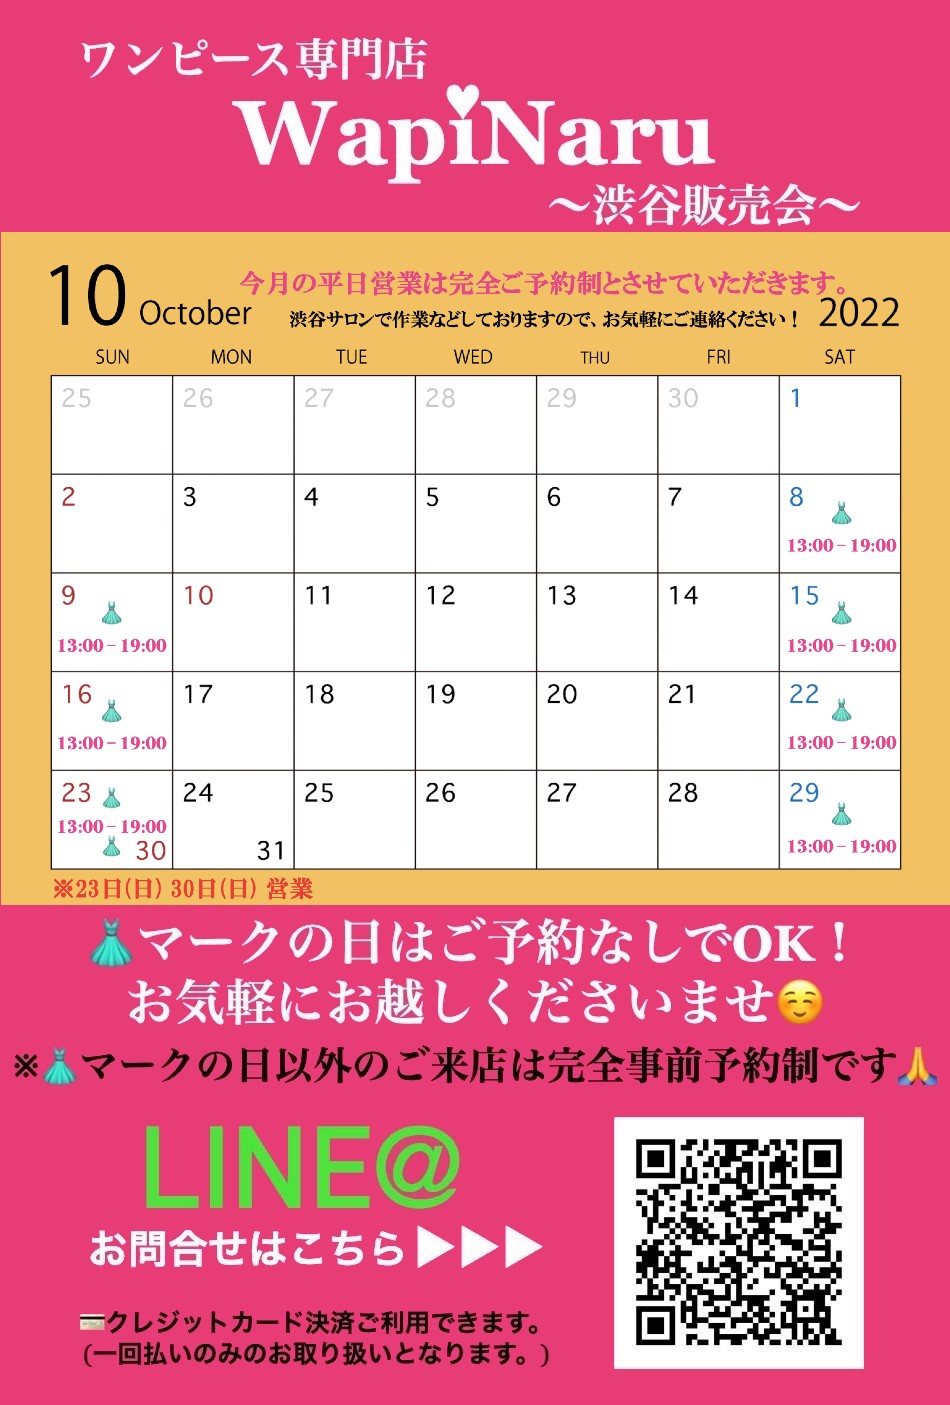 2022年10月 渋谷販売会